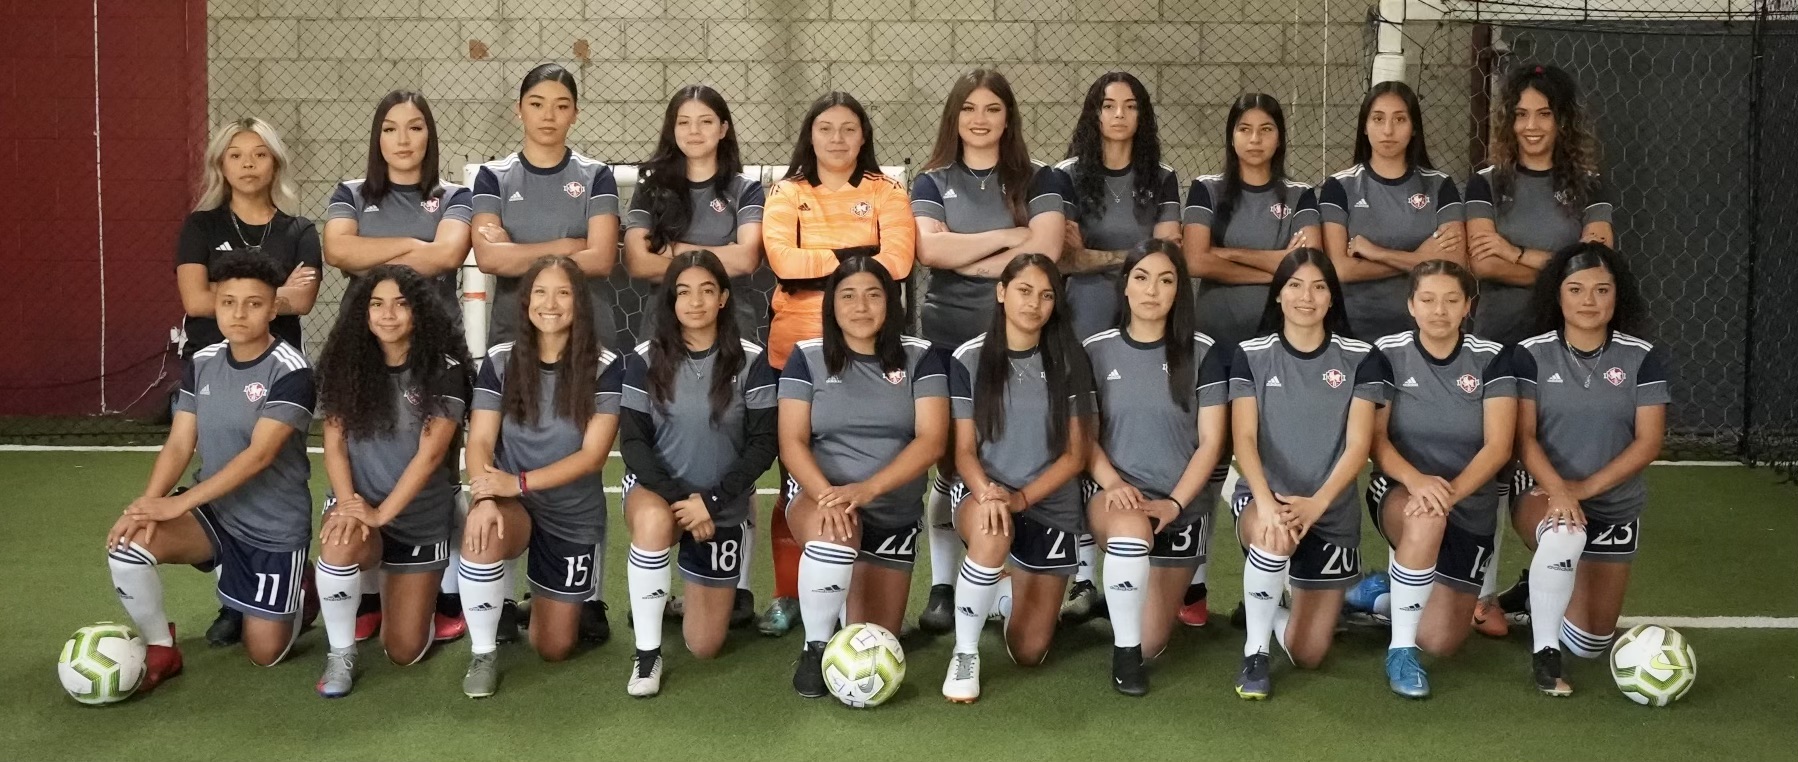 Women's Soccer Program Makes a Comeback